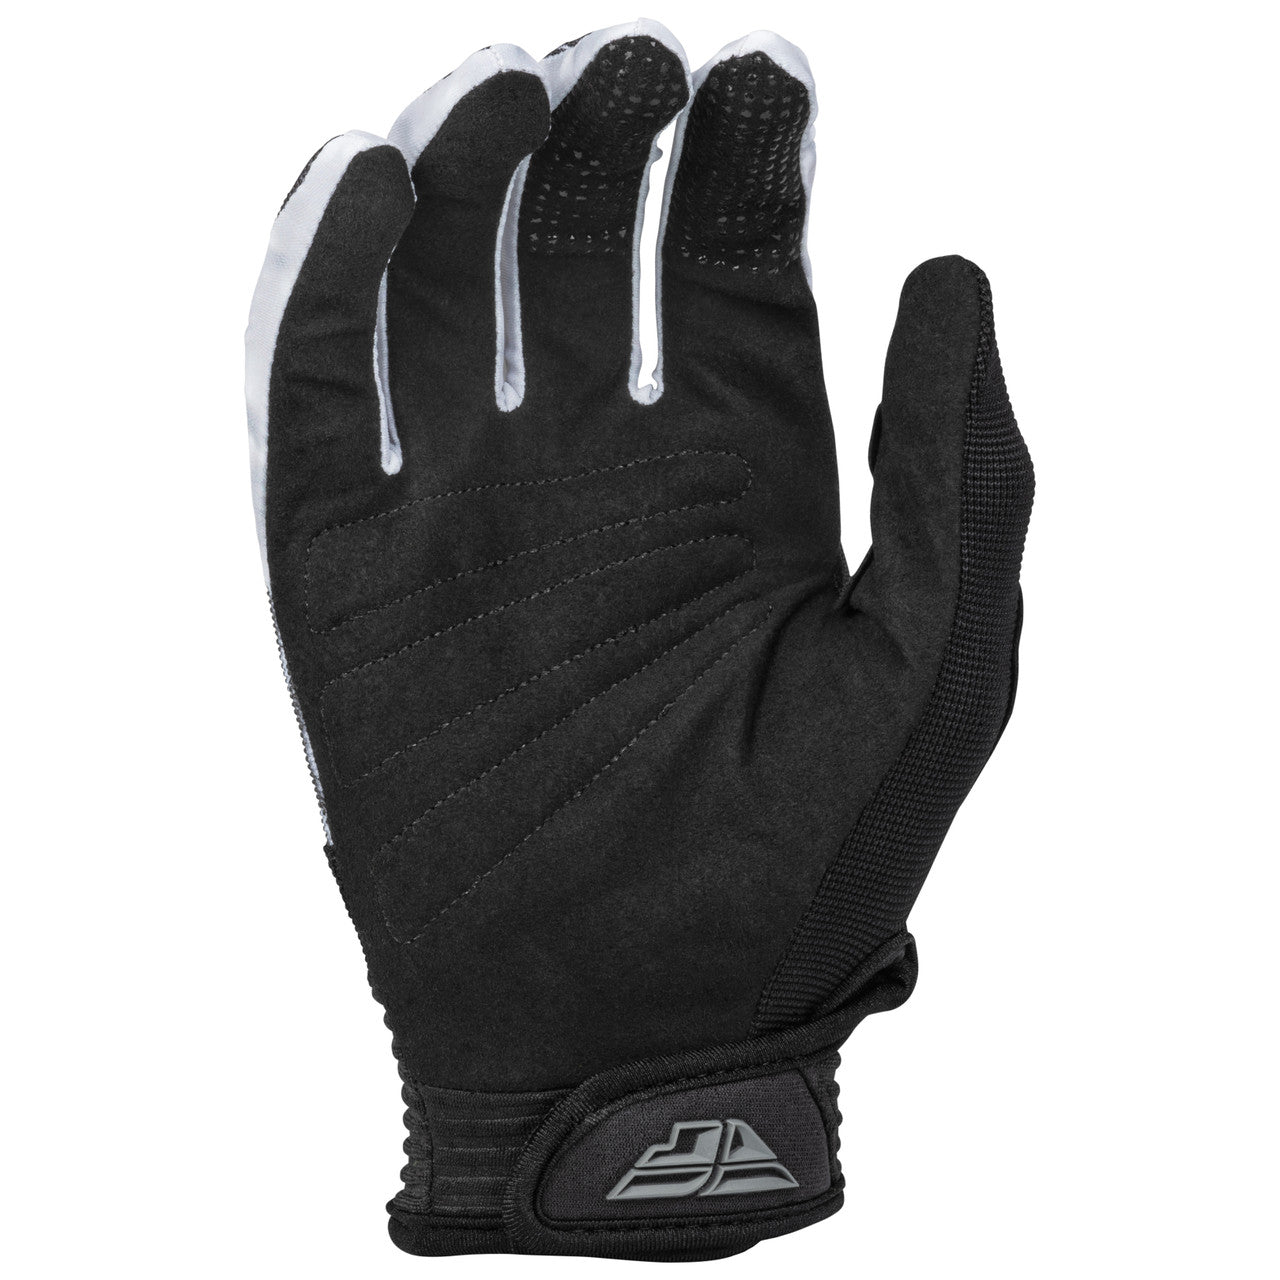 Fly F-16 MX Gloves Grey/Black